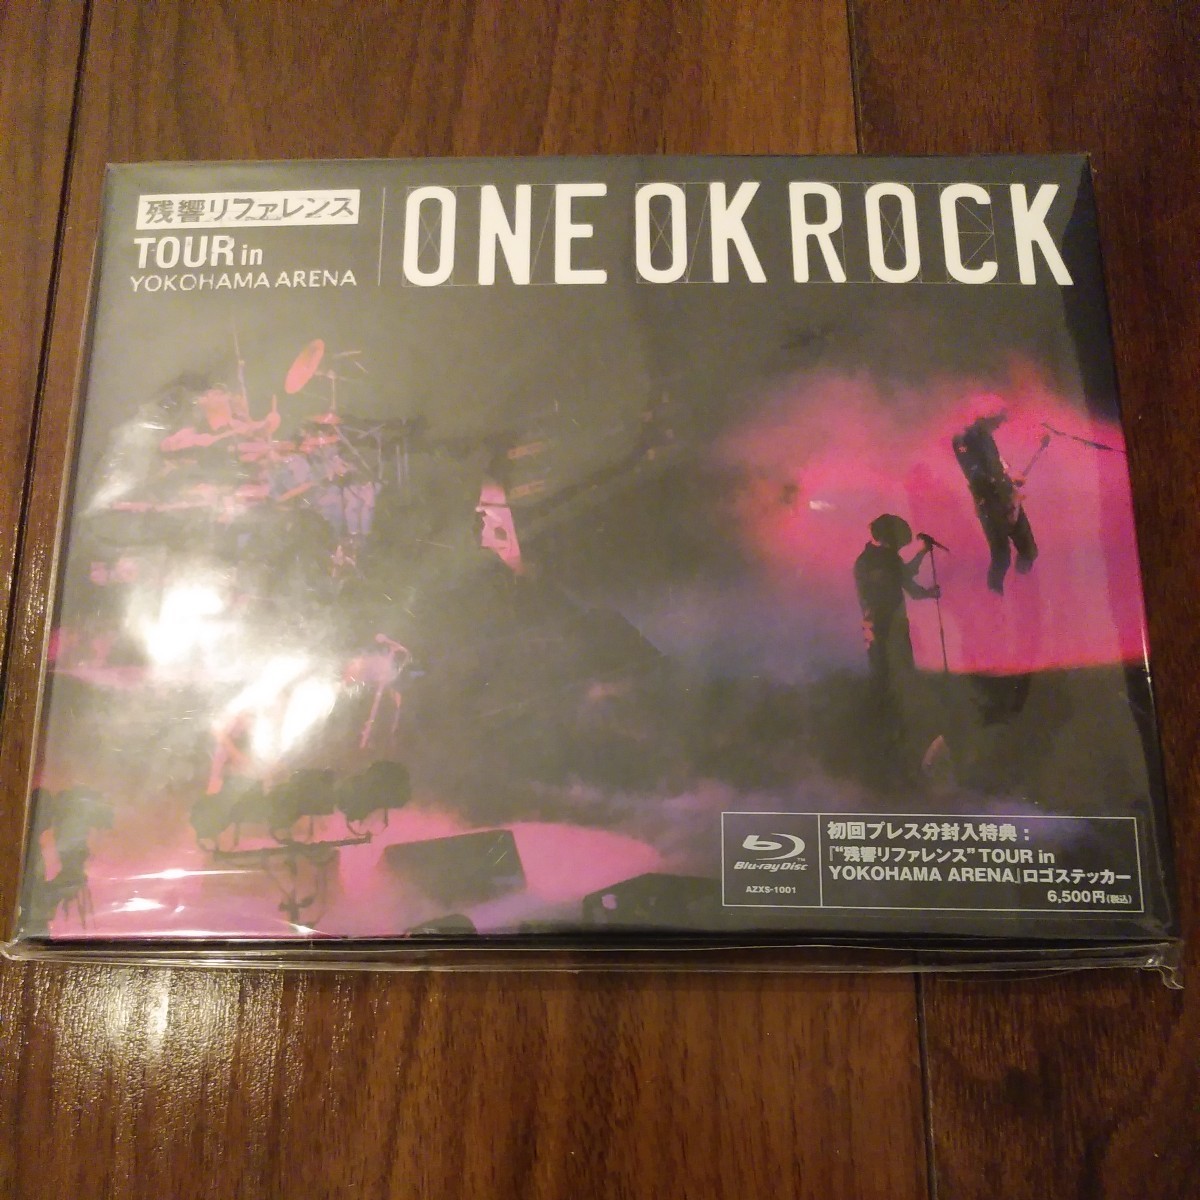 【送料無料】ONE OK ROCK Blu-ray 残響リファレンス TOUR in YOKOHAMA ARENA ワンオクロック/DVD ブルーレイ/横浜アリーナ/ステッカー付属_画像1